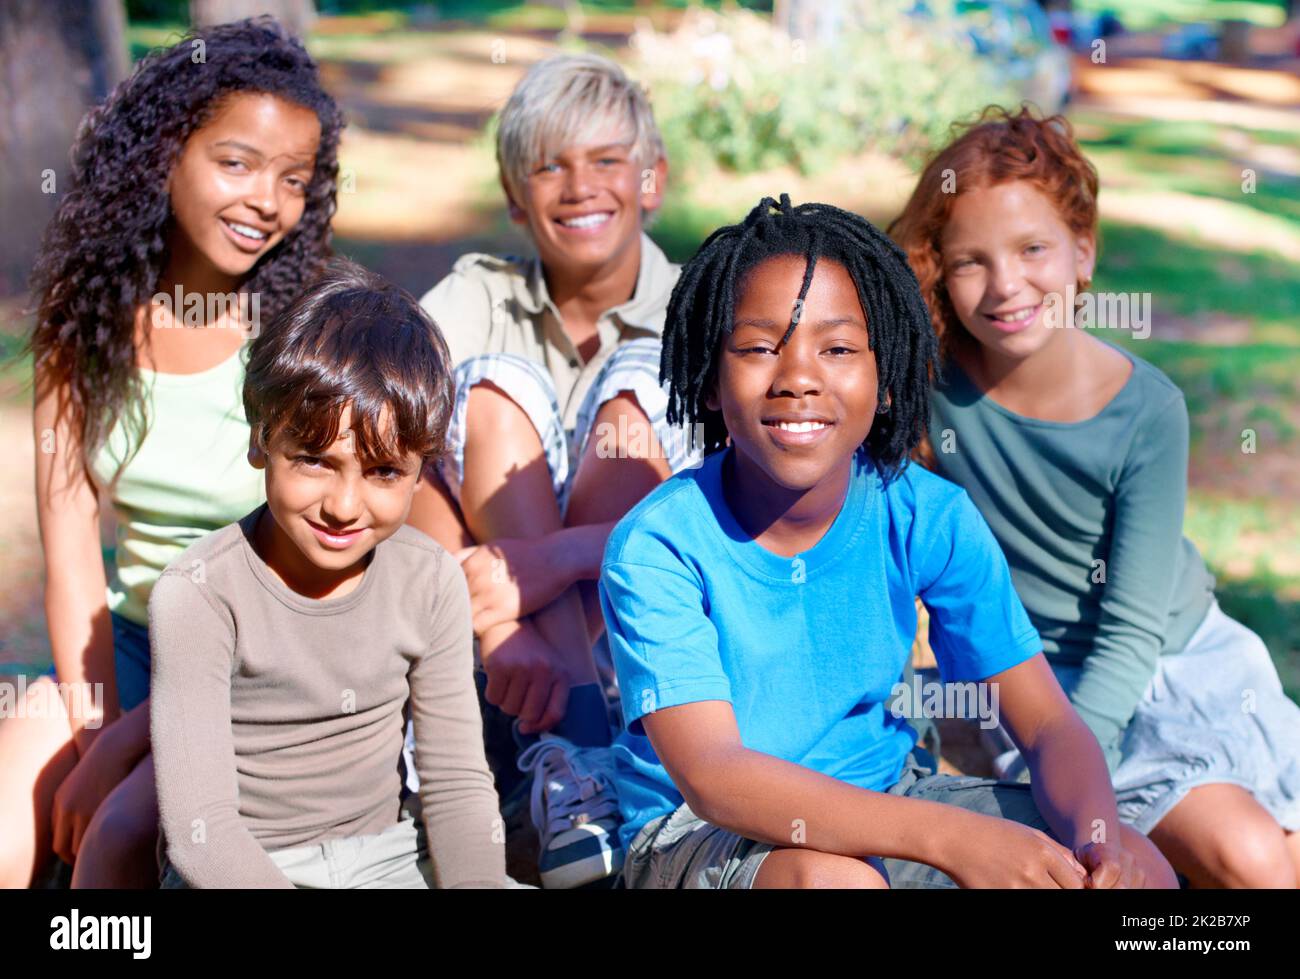 Sie sind unsere Zukunft. Eine Gruppe von Kindern lächelt im Freien an der Kamera. Stockfoto